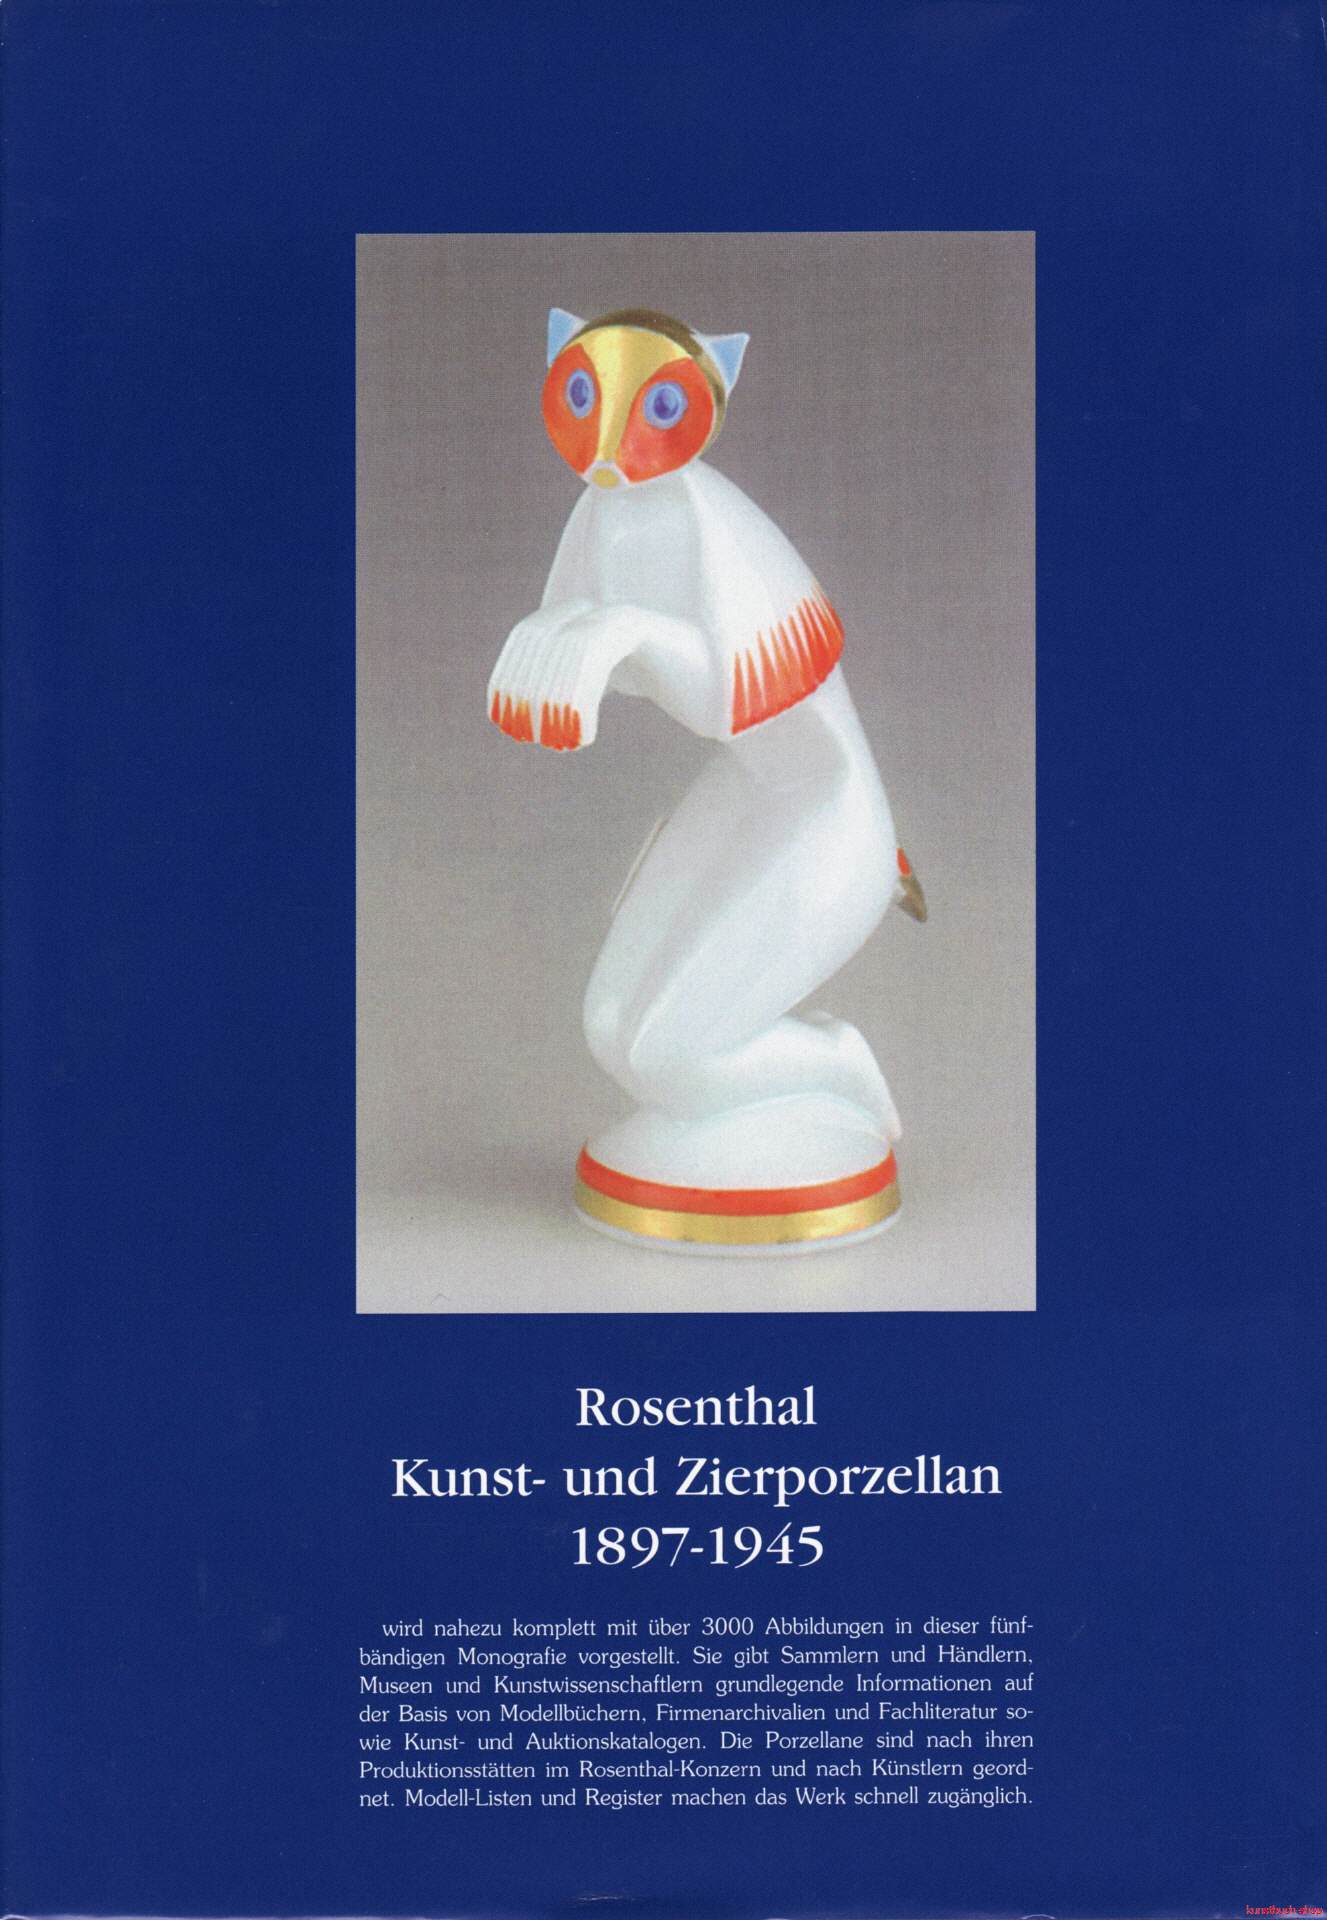 Rosenthal, Kunst- und Zierporzellan 1897-1945 / Rosenthal - Kunst und Zierporzellan 1897-1945. Band 2